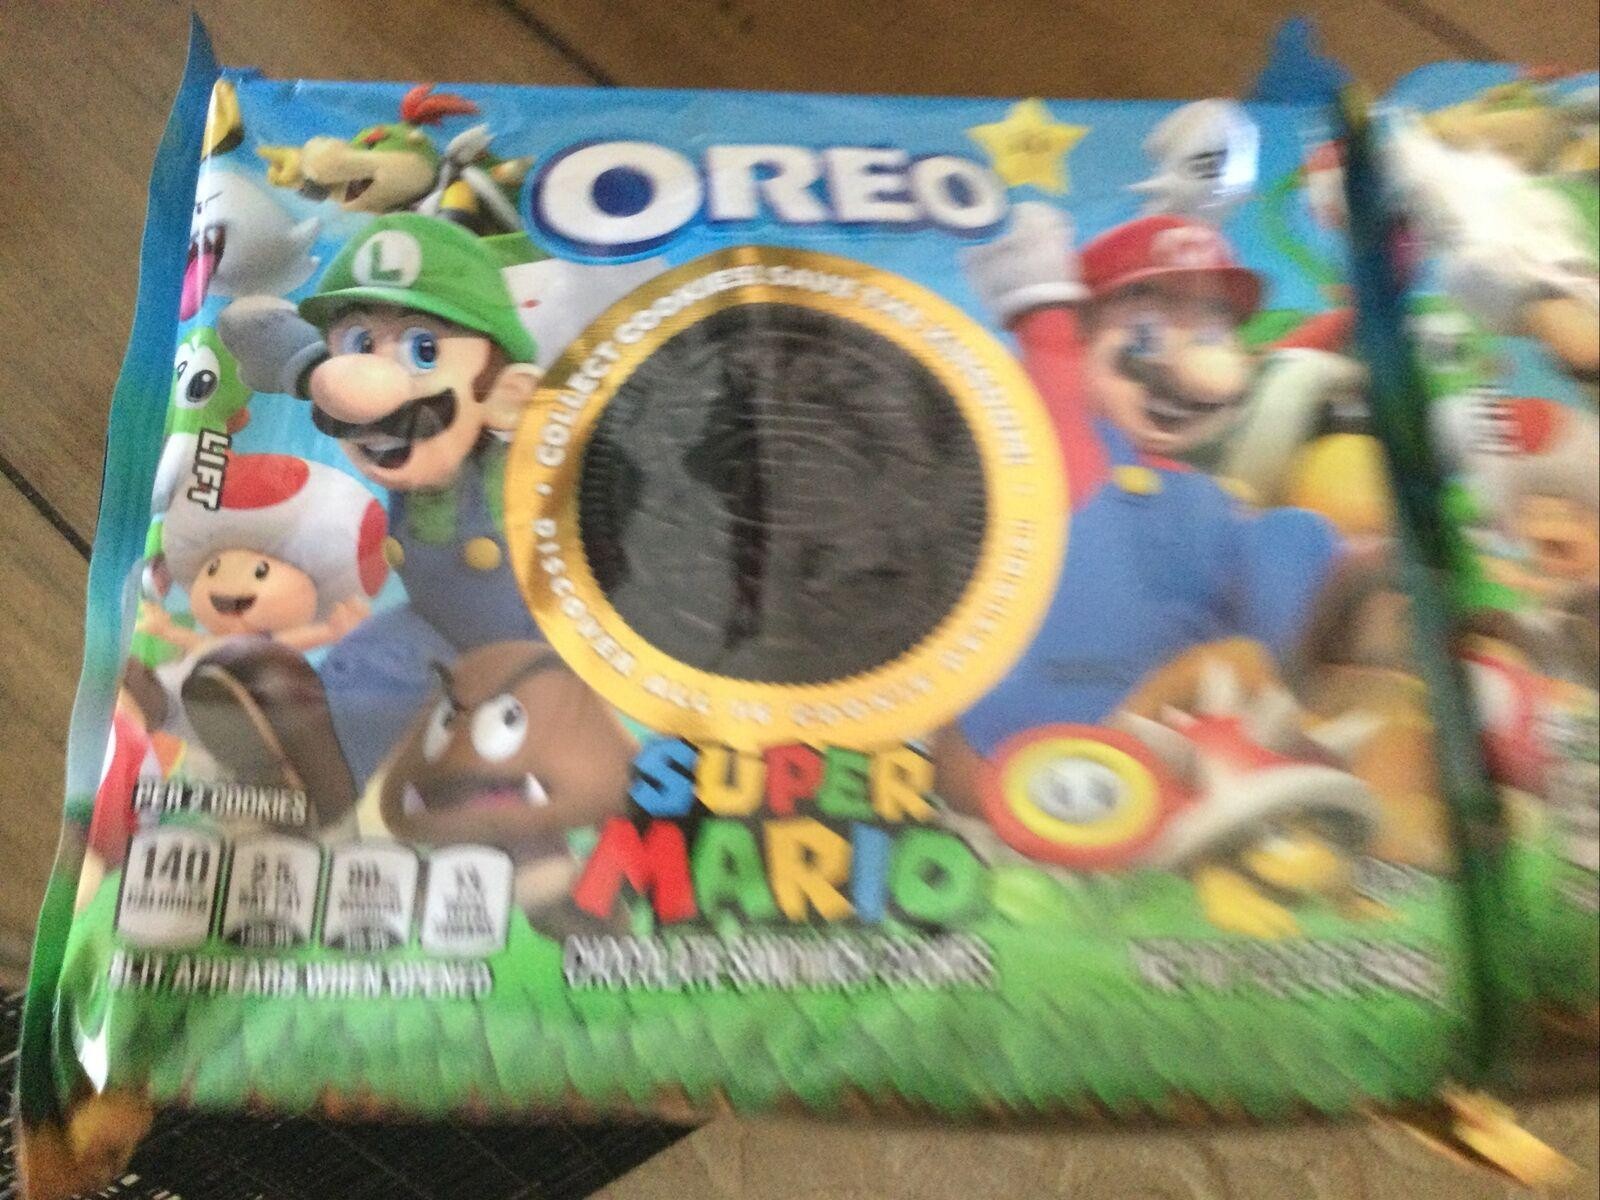 Super Mario Oreo Cookies